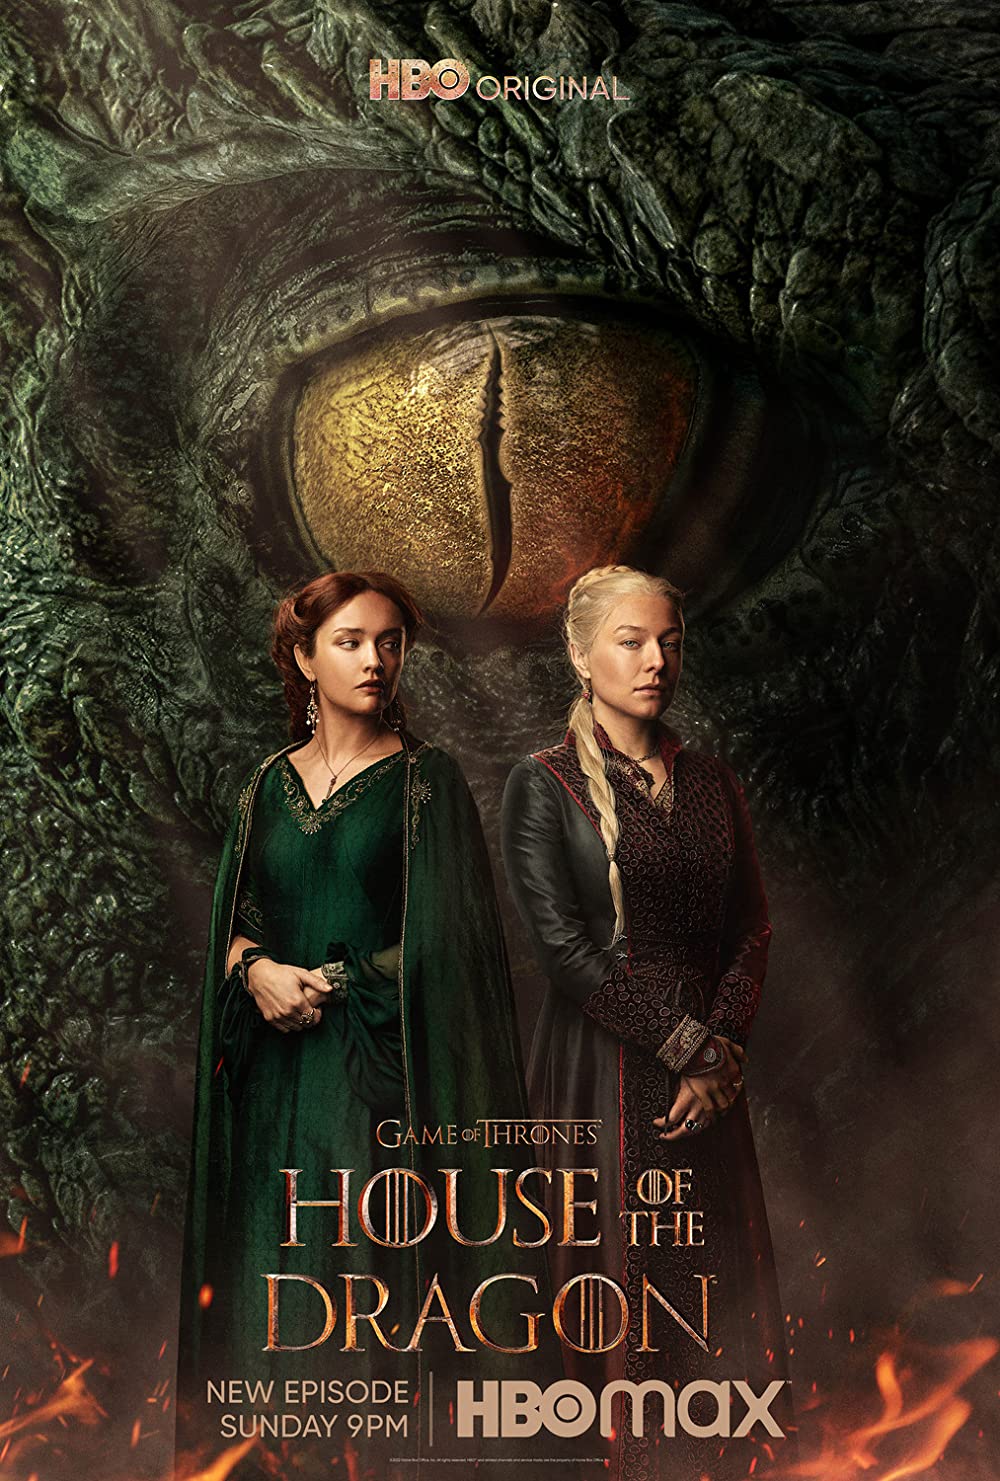 Game Of Thrones Brasil - Segundo o IMDB, HOUSE OF THE DRAGON estreia em 3  de abril de 2022! 😱 Aguardamos confirmação da HBO! Siga no Instagram